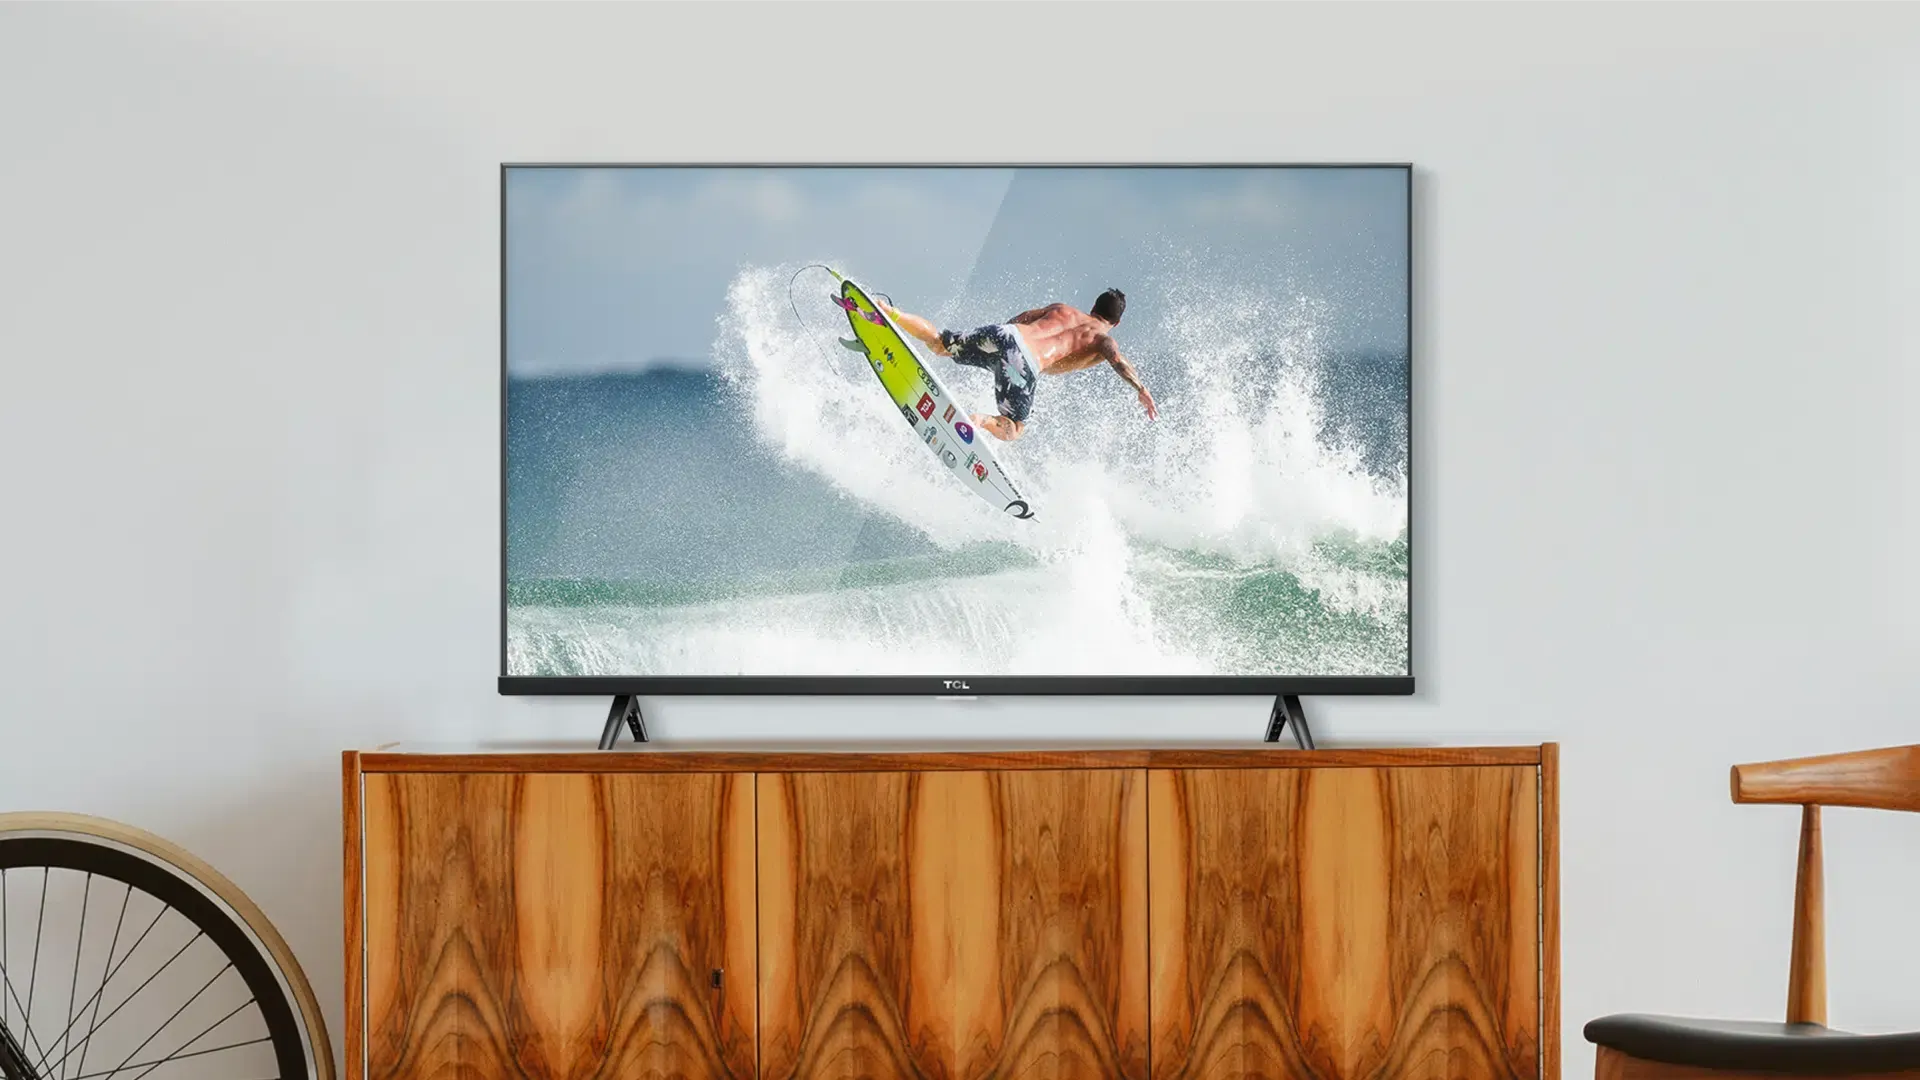 TV barata TCL S615 sobre rack de madeira, exibindo imagens de surfe.